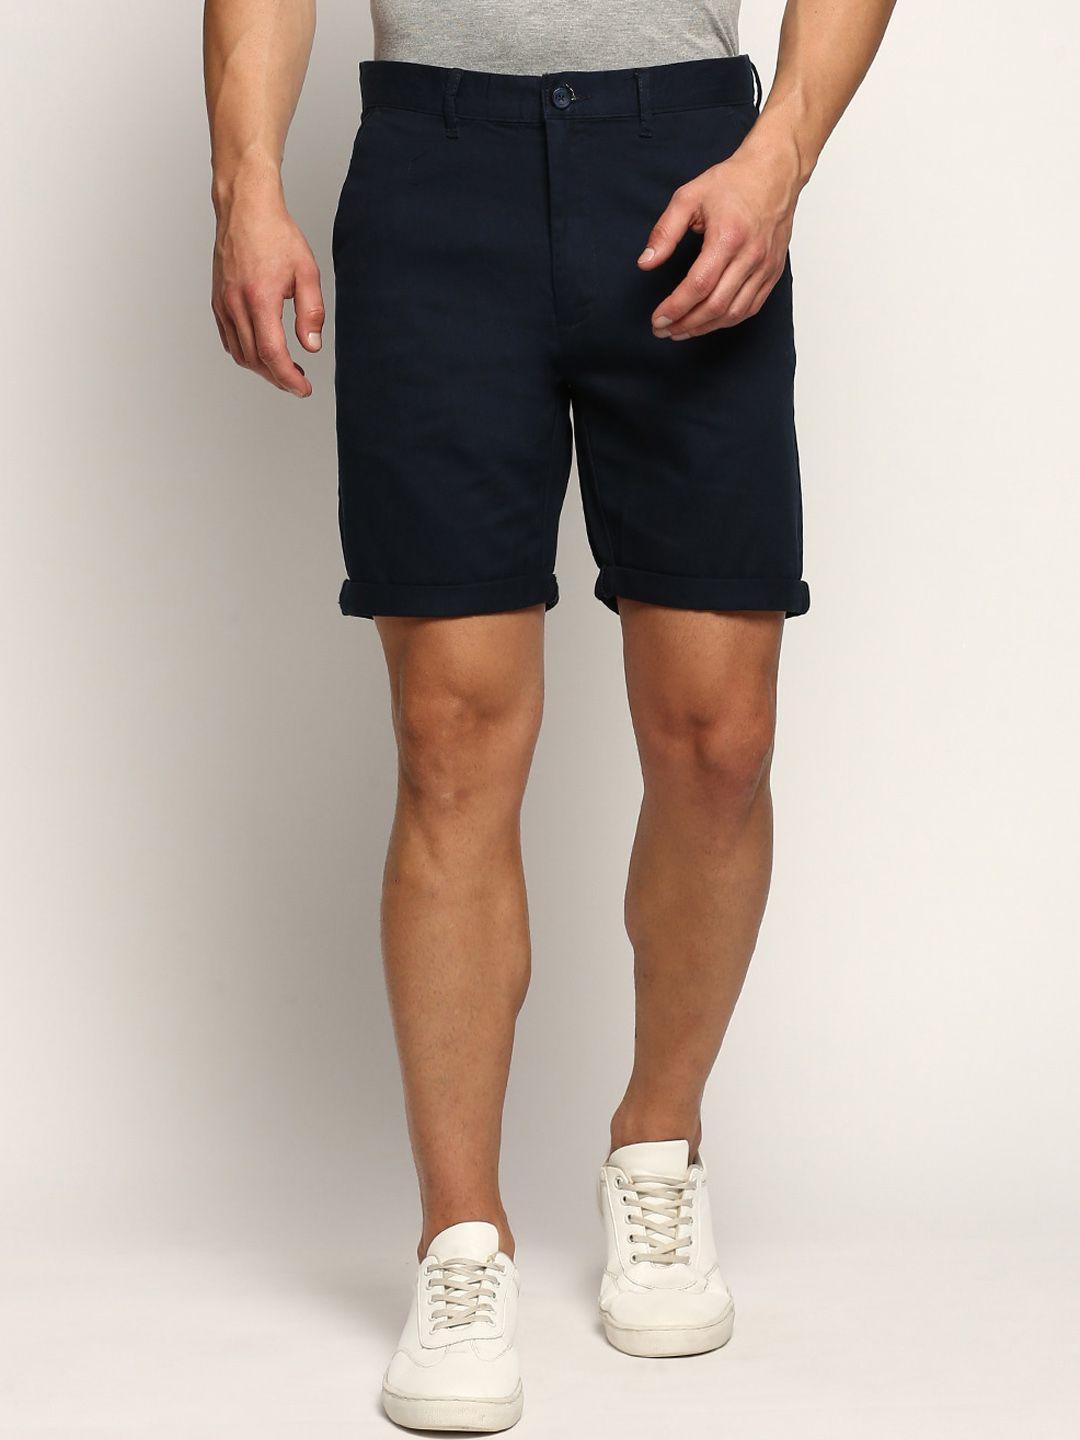 showoff-men-mid-raise-cotton-casual-shorts